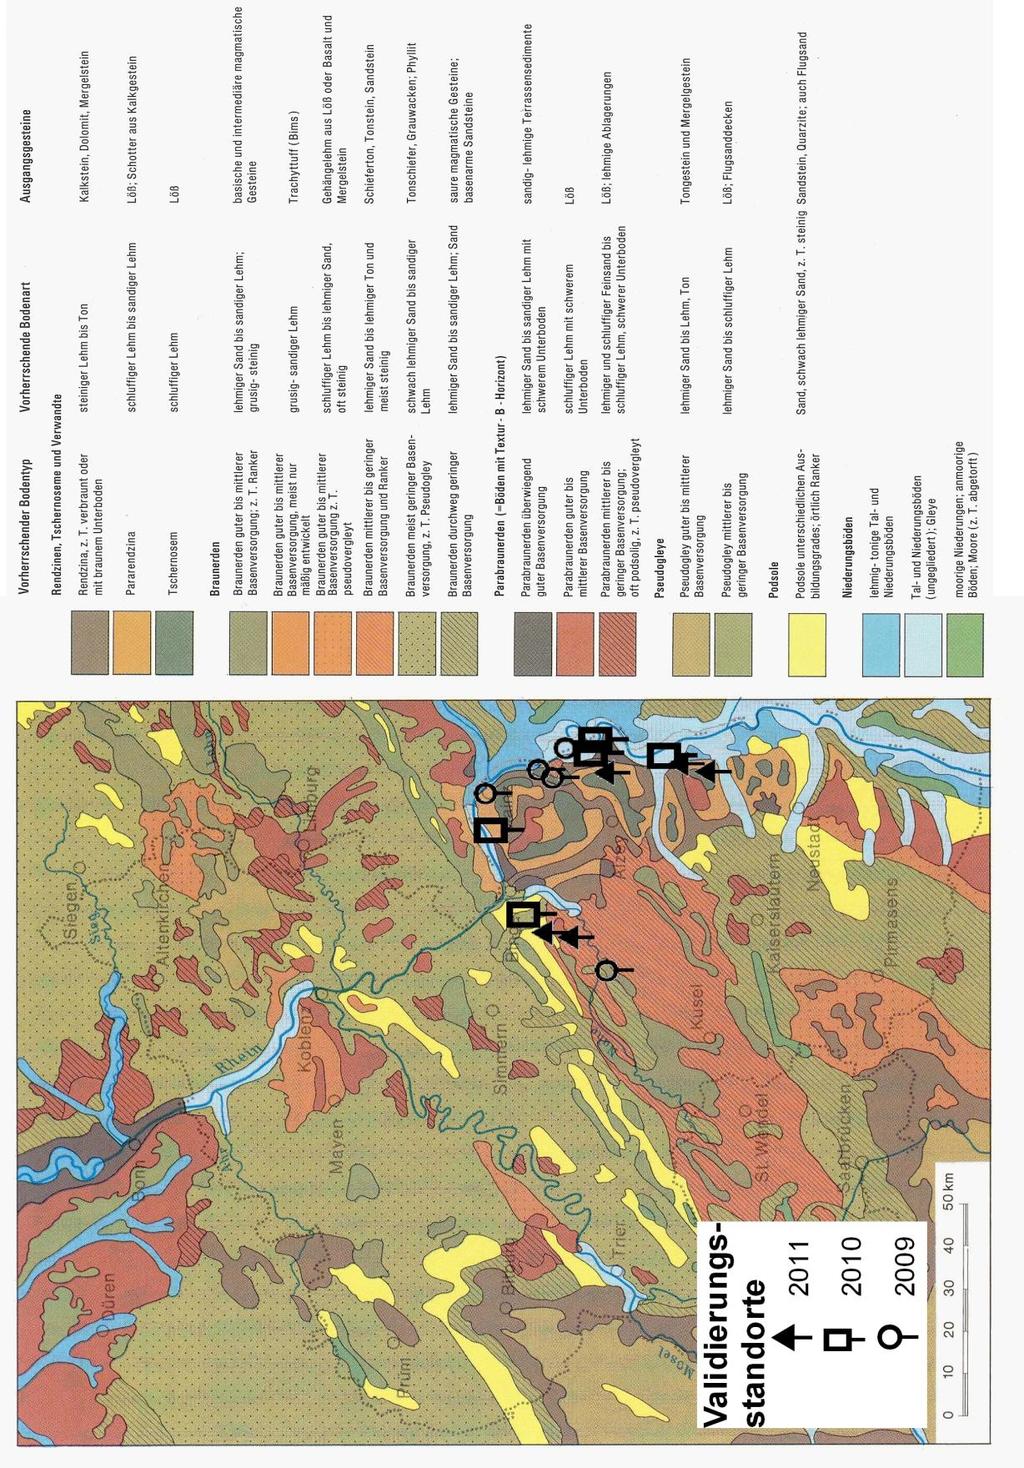 Abbildung 9: Lage der Validierungsstandorte in der Übersichtskarte der Böden des Rhein-Mosel-Raumes (Quelle: FISCHER (1989) nach HOLLSTEIN (1963); mit eigenen Veränderungen) Abbildung 9: Lage der